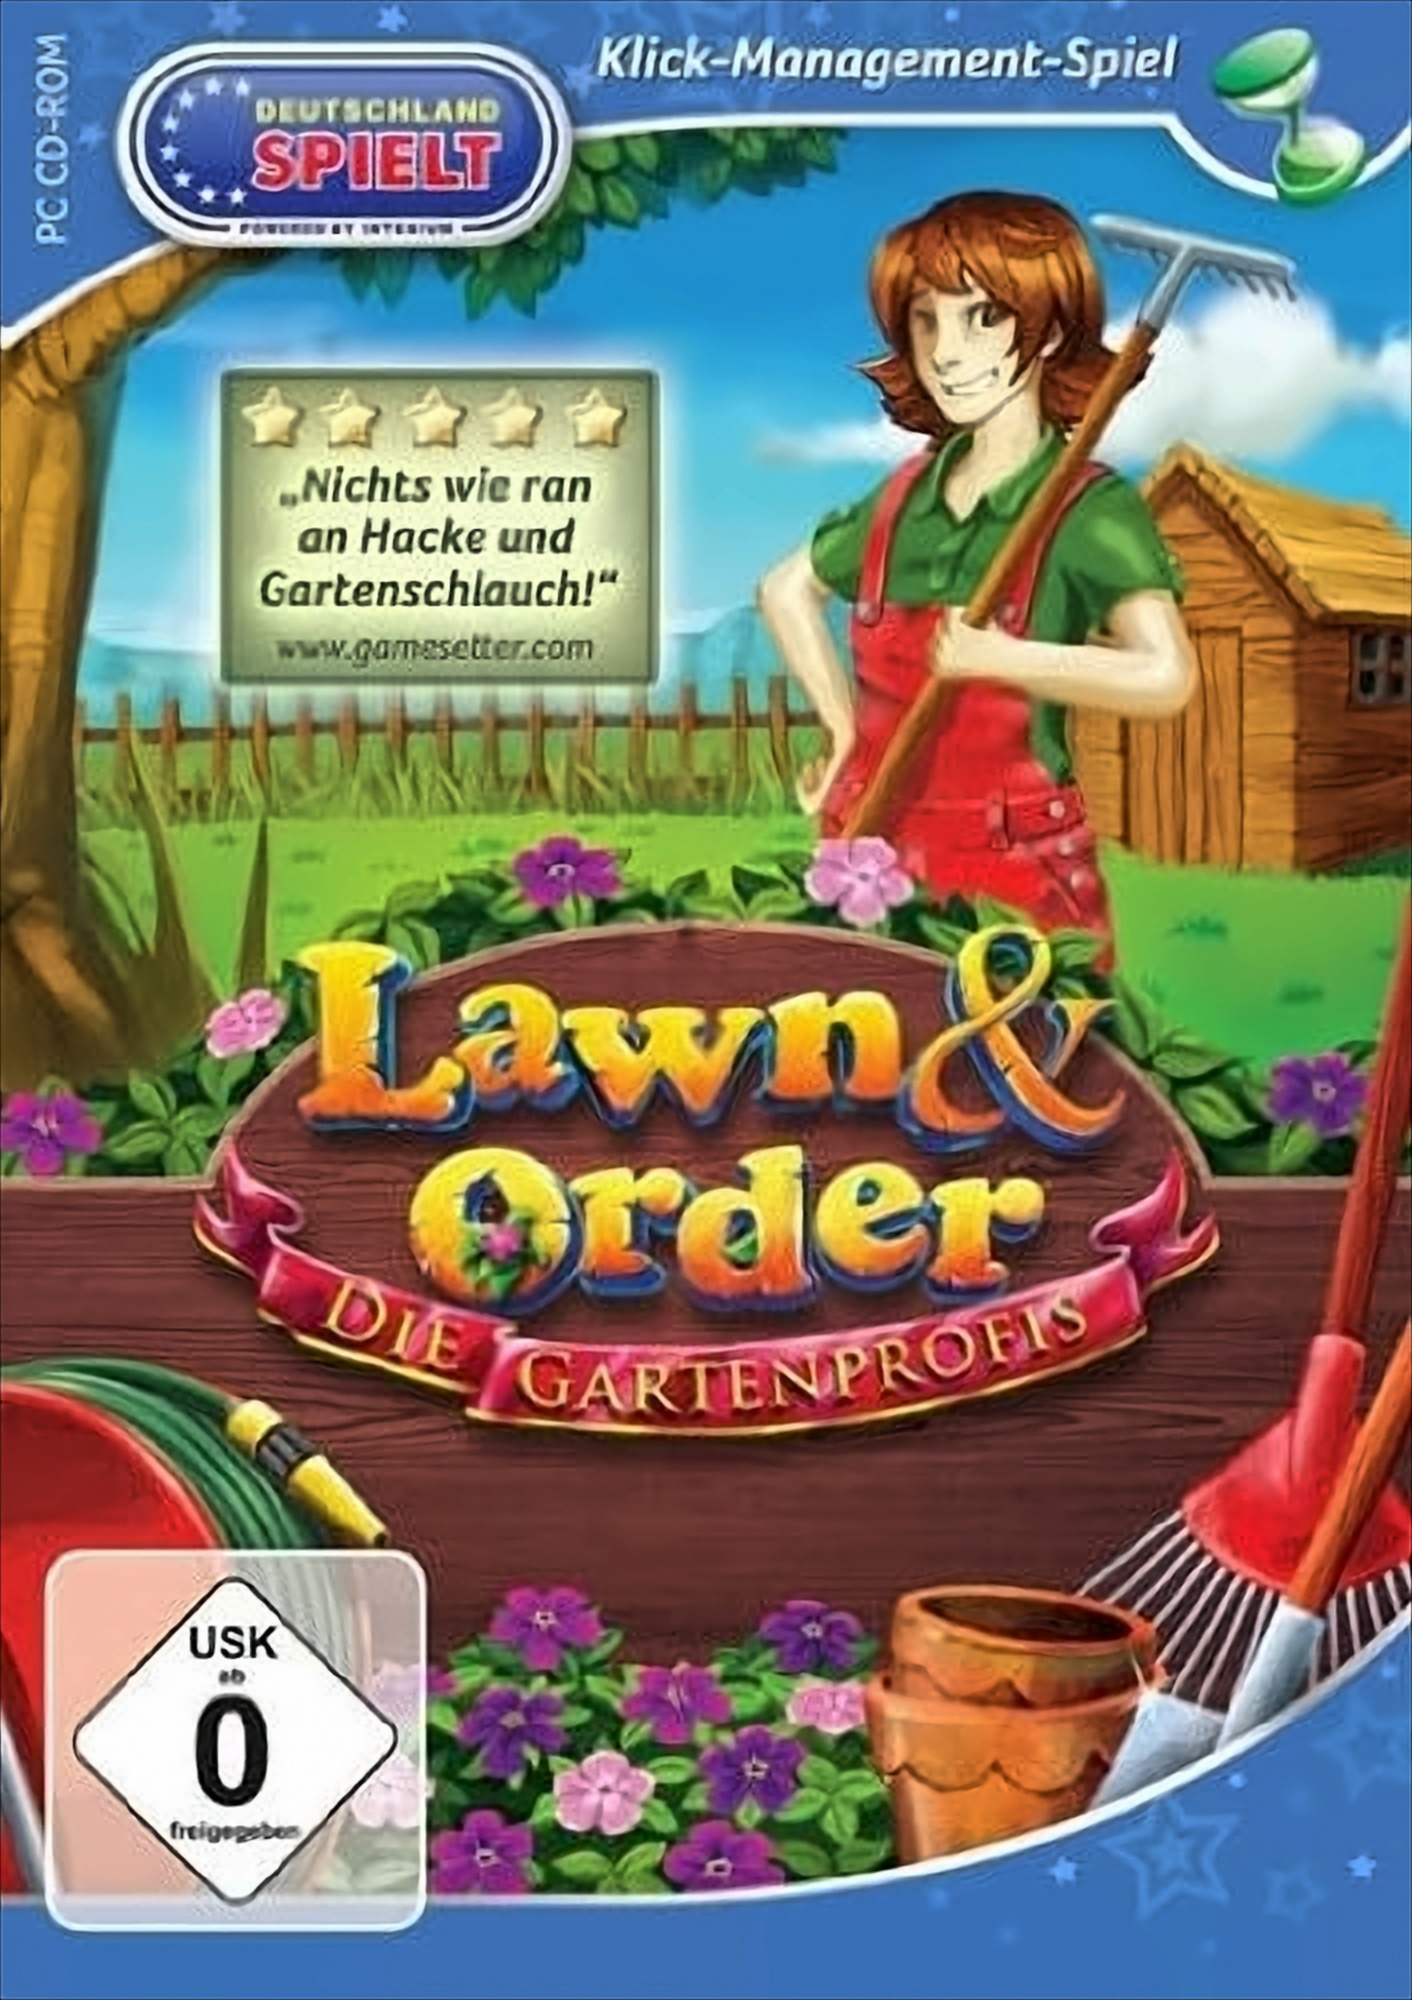 Die - Gartenprofis Order Lawn & [PC]